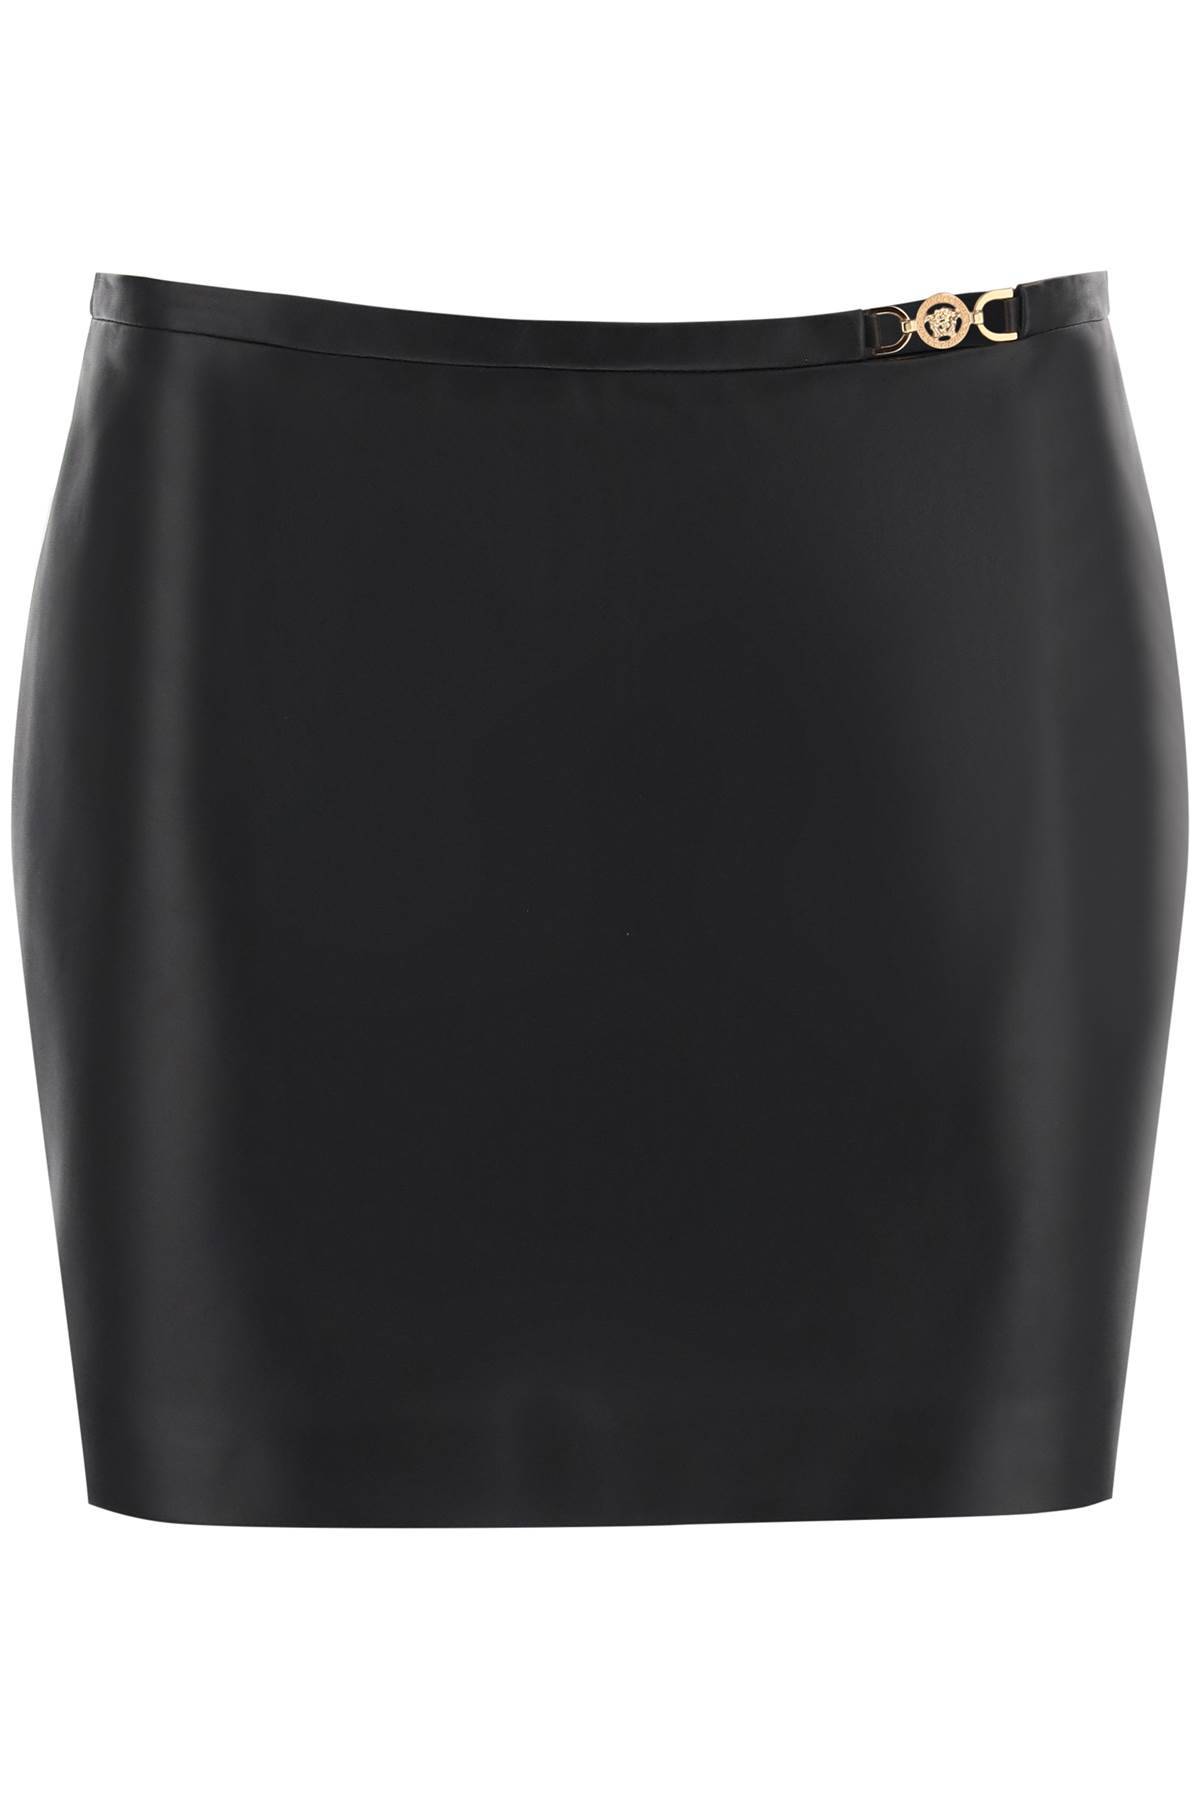 Versace VERSACE medusa '95 leather mini skirt